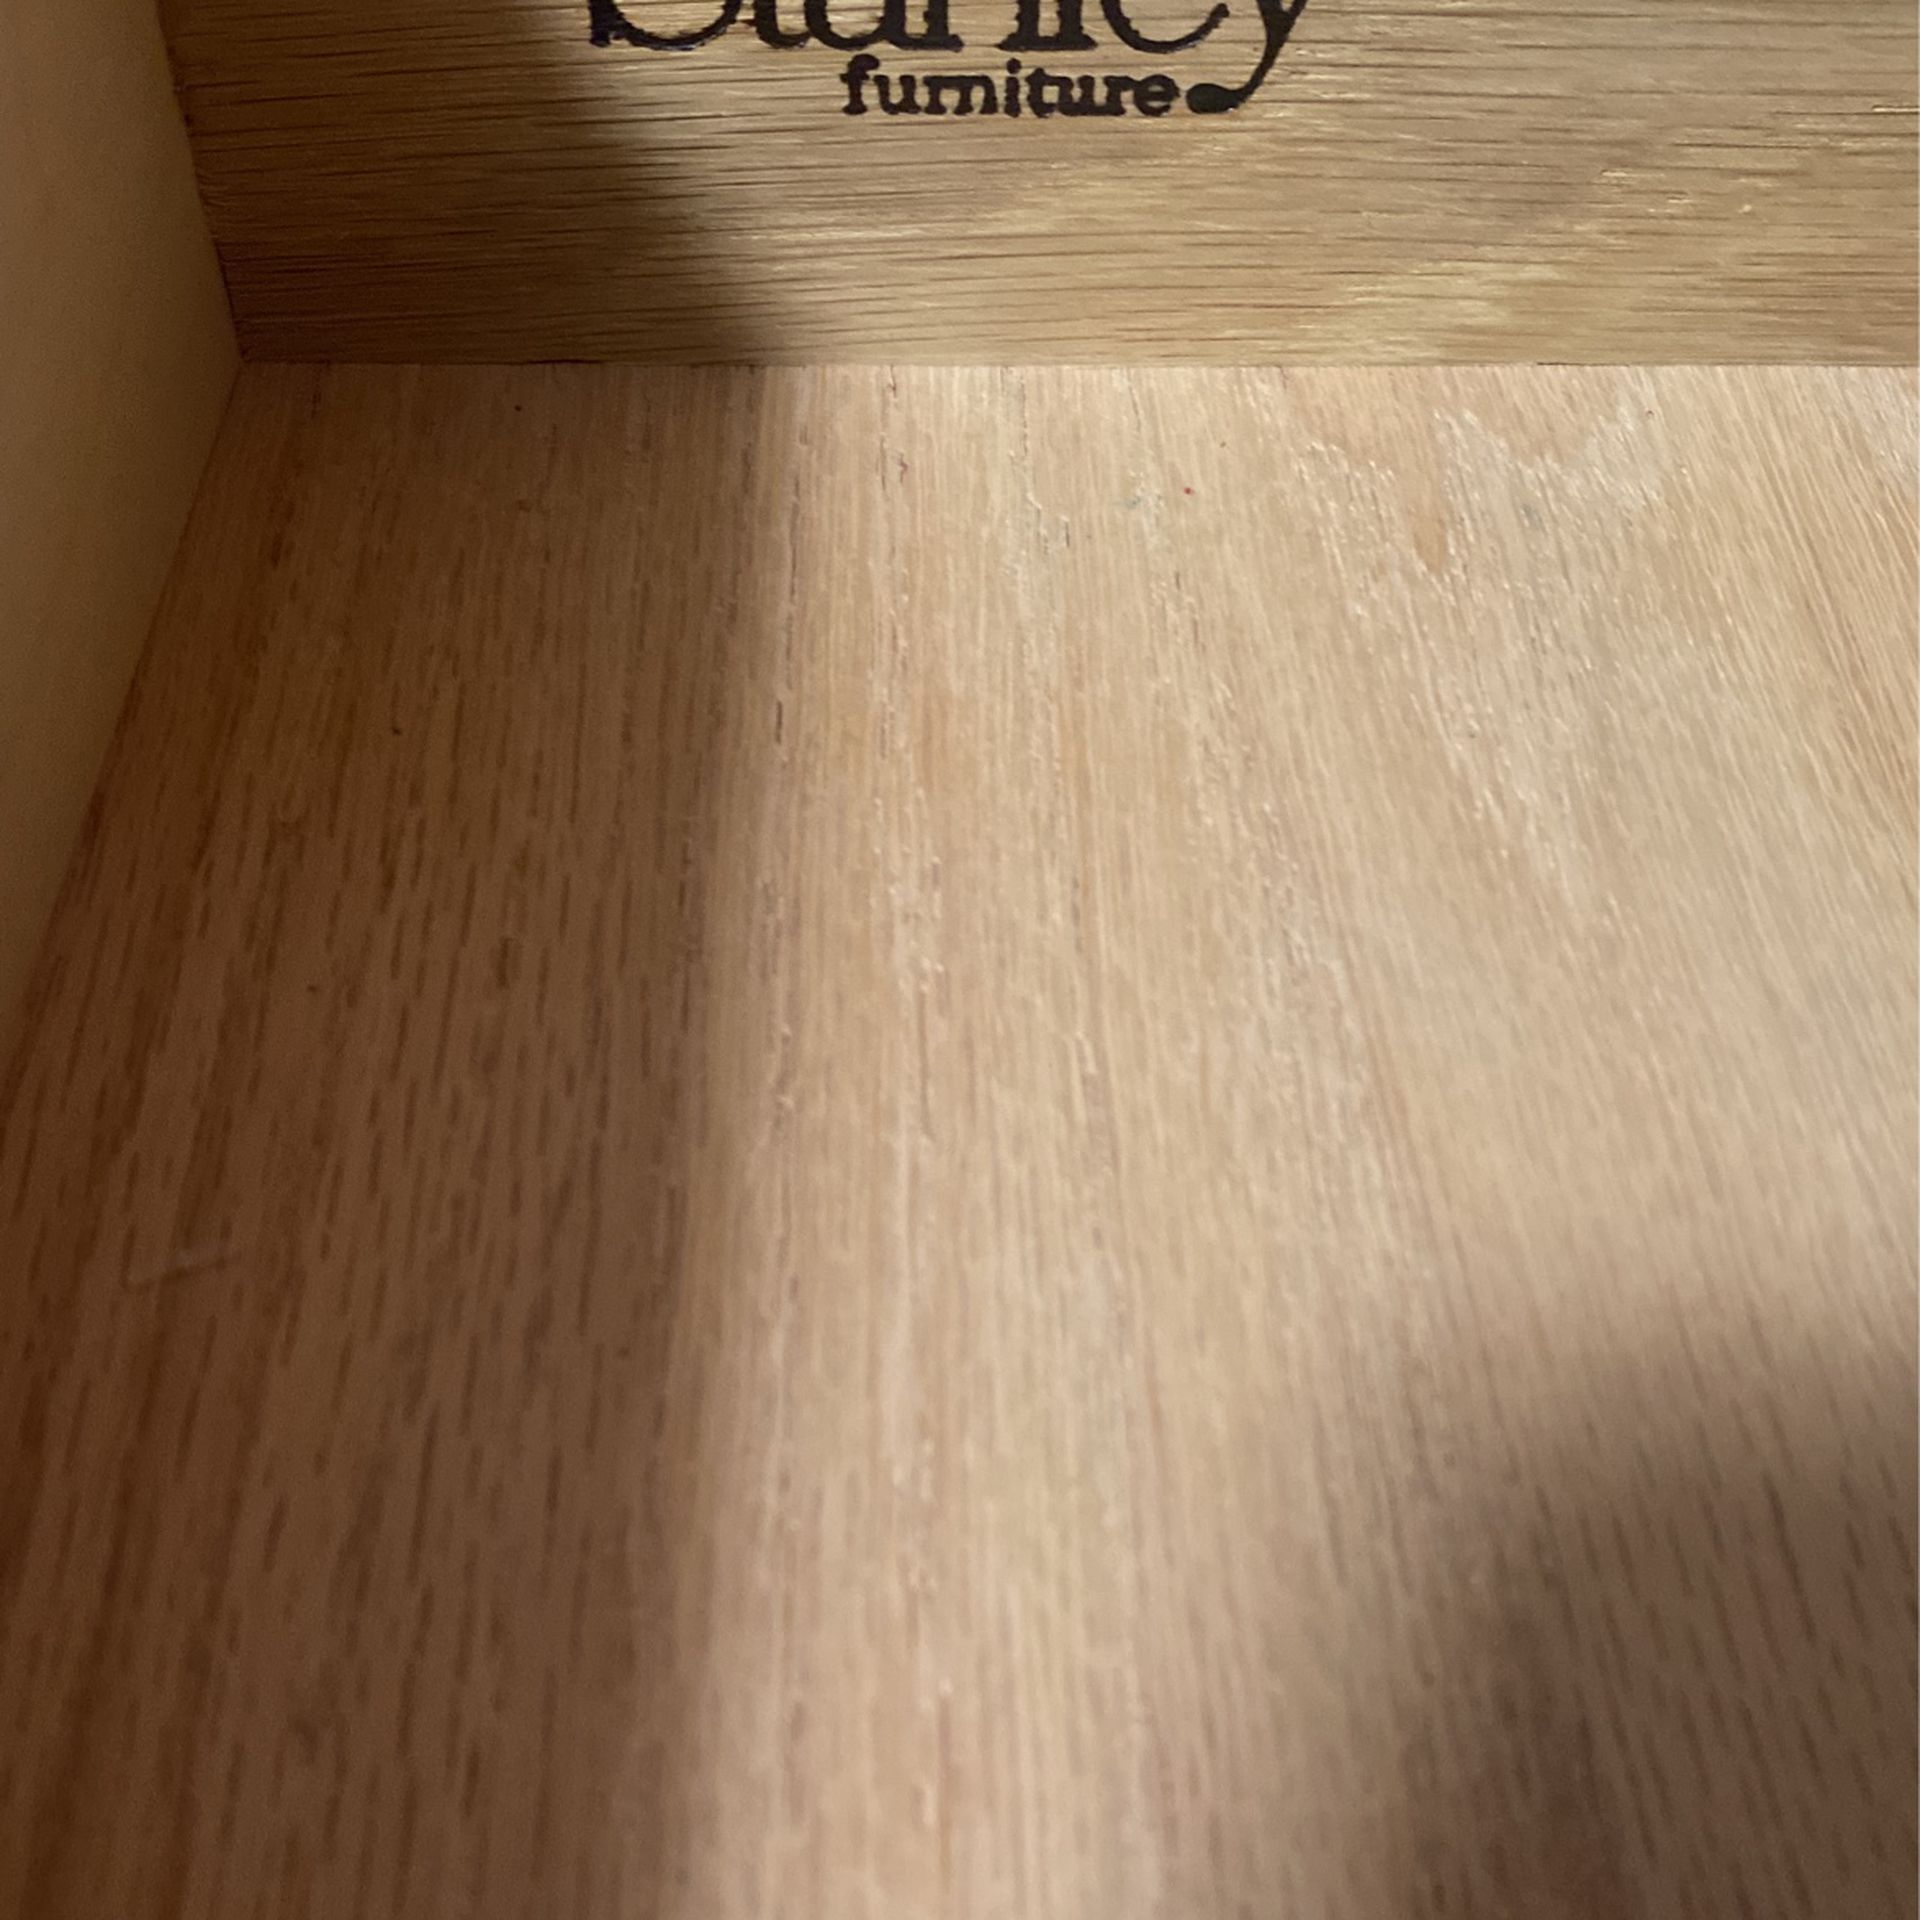 Stanley Furniture- Oak wood, Black Marble Entryway Table